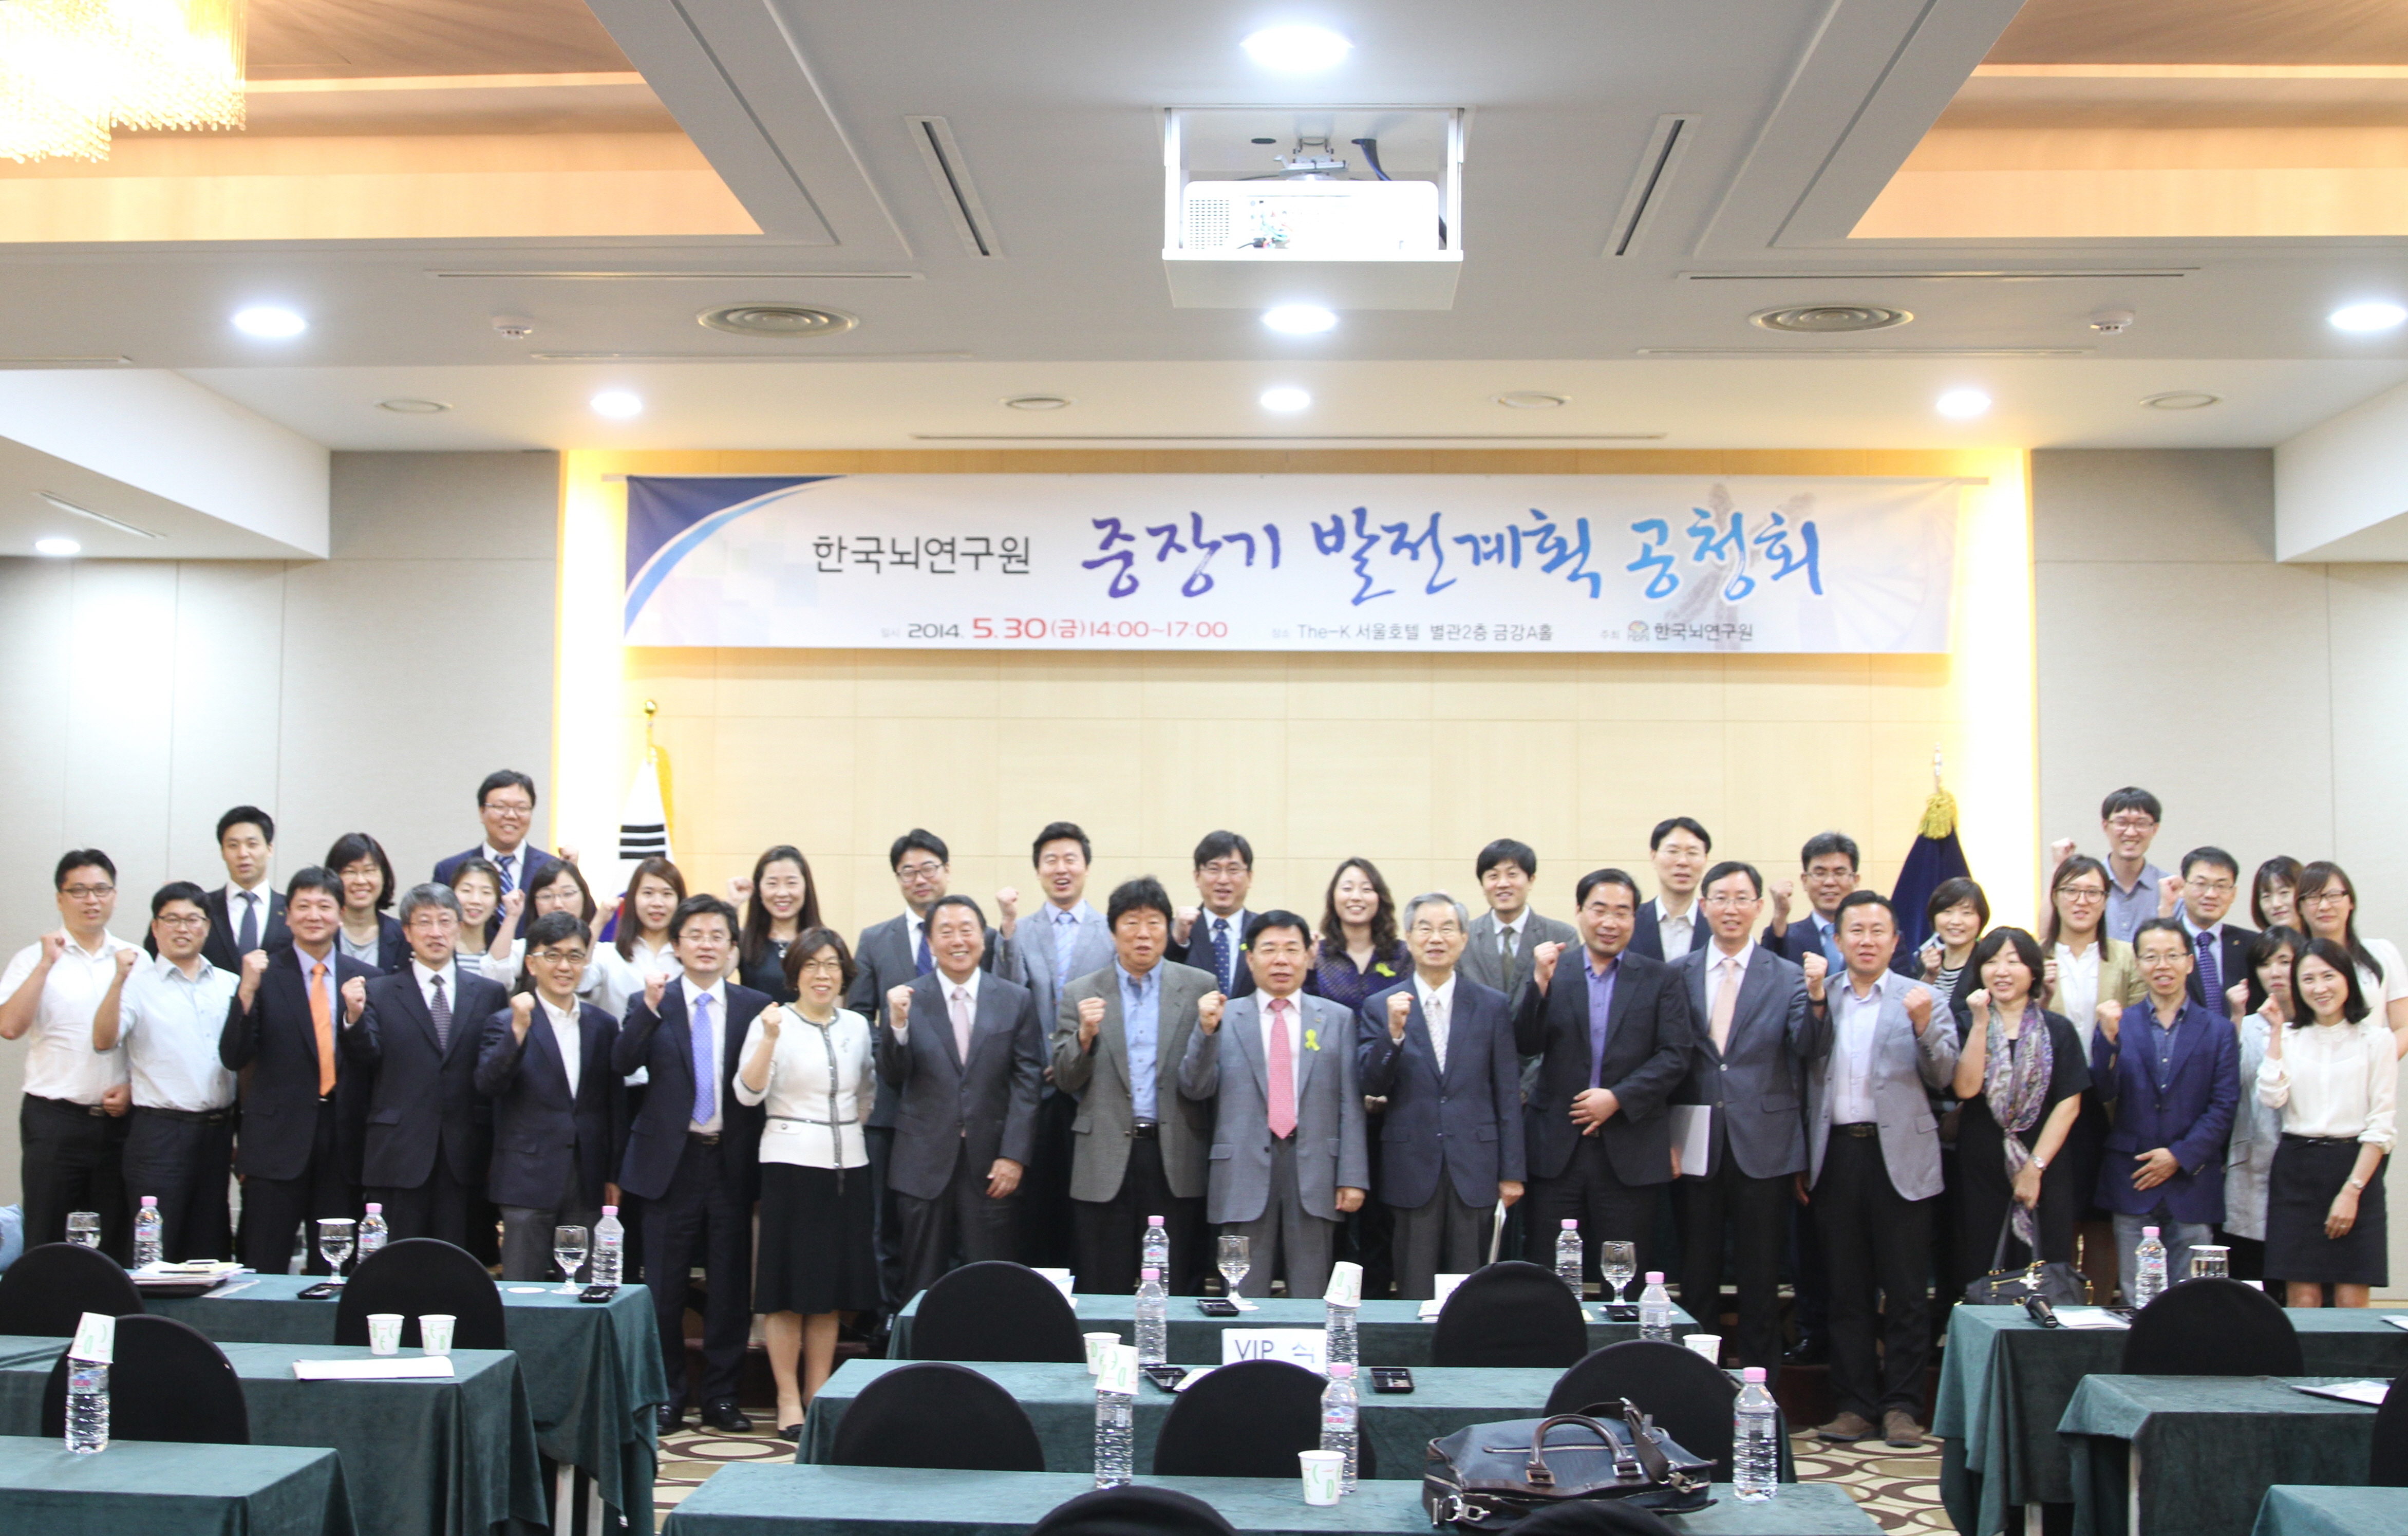 한국뇌연구원 중장기 발전계획 공청회 (2014.05.30)